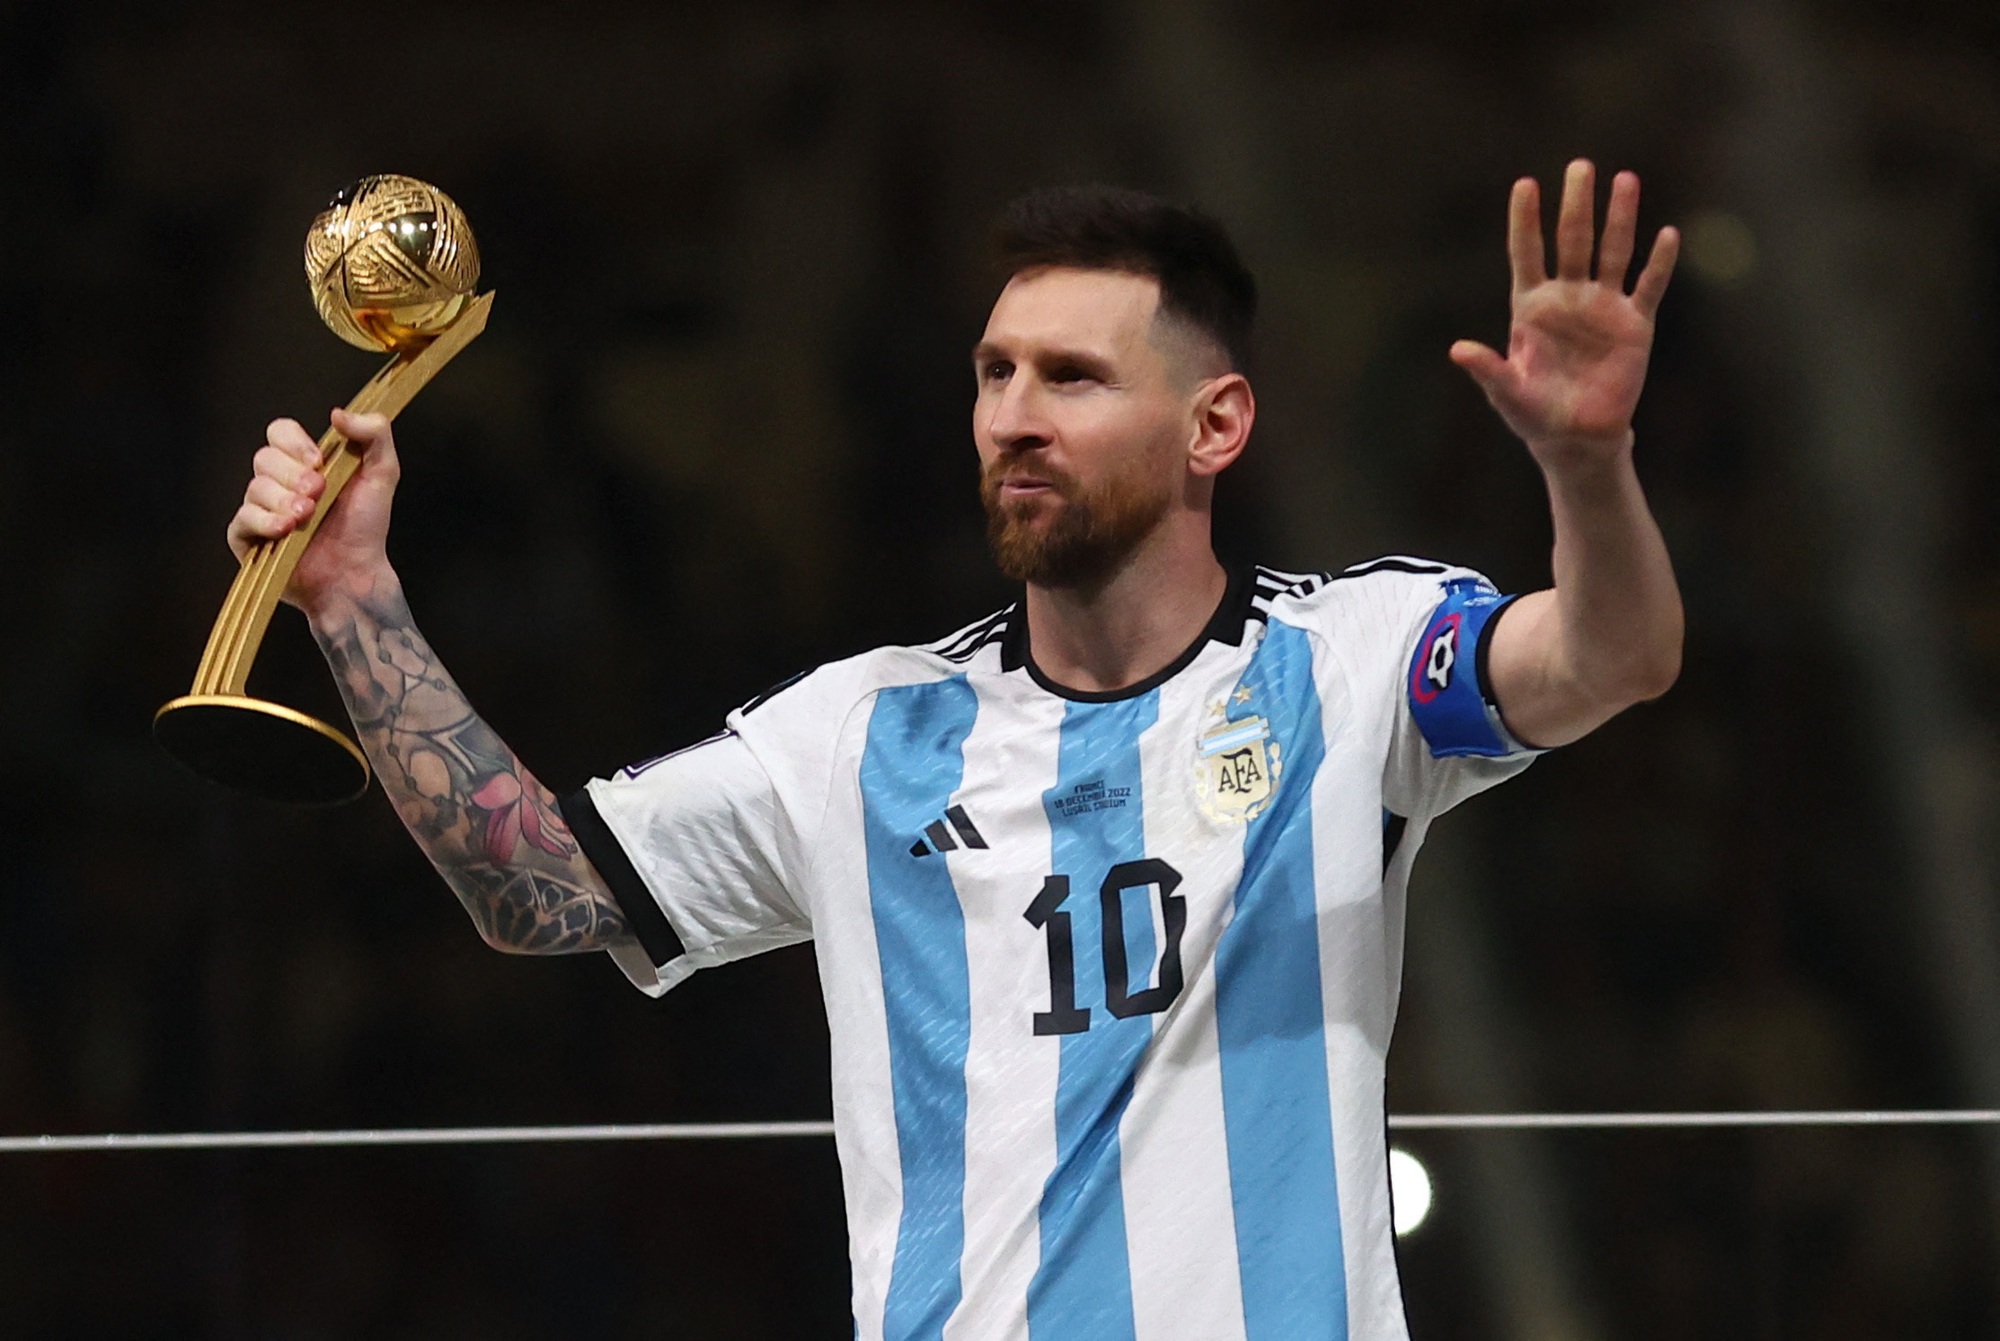 Chia tay không đồng nghĩa với thất bại, tuyển Argentina của Messi sẽ cùng nhau đi đến chiến thắng trong World Cup. Hãy đến và xem các trận đấu đầy cảm xúc với các ngôi sao hàng đầu của bóng đá thế giới.